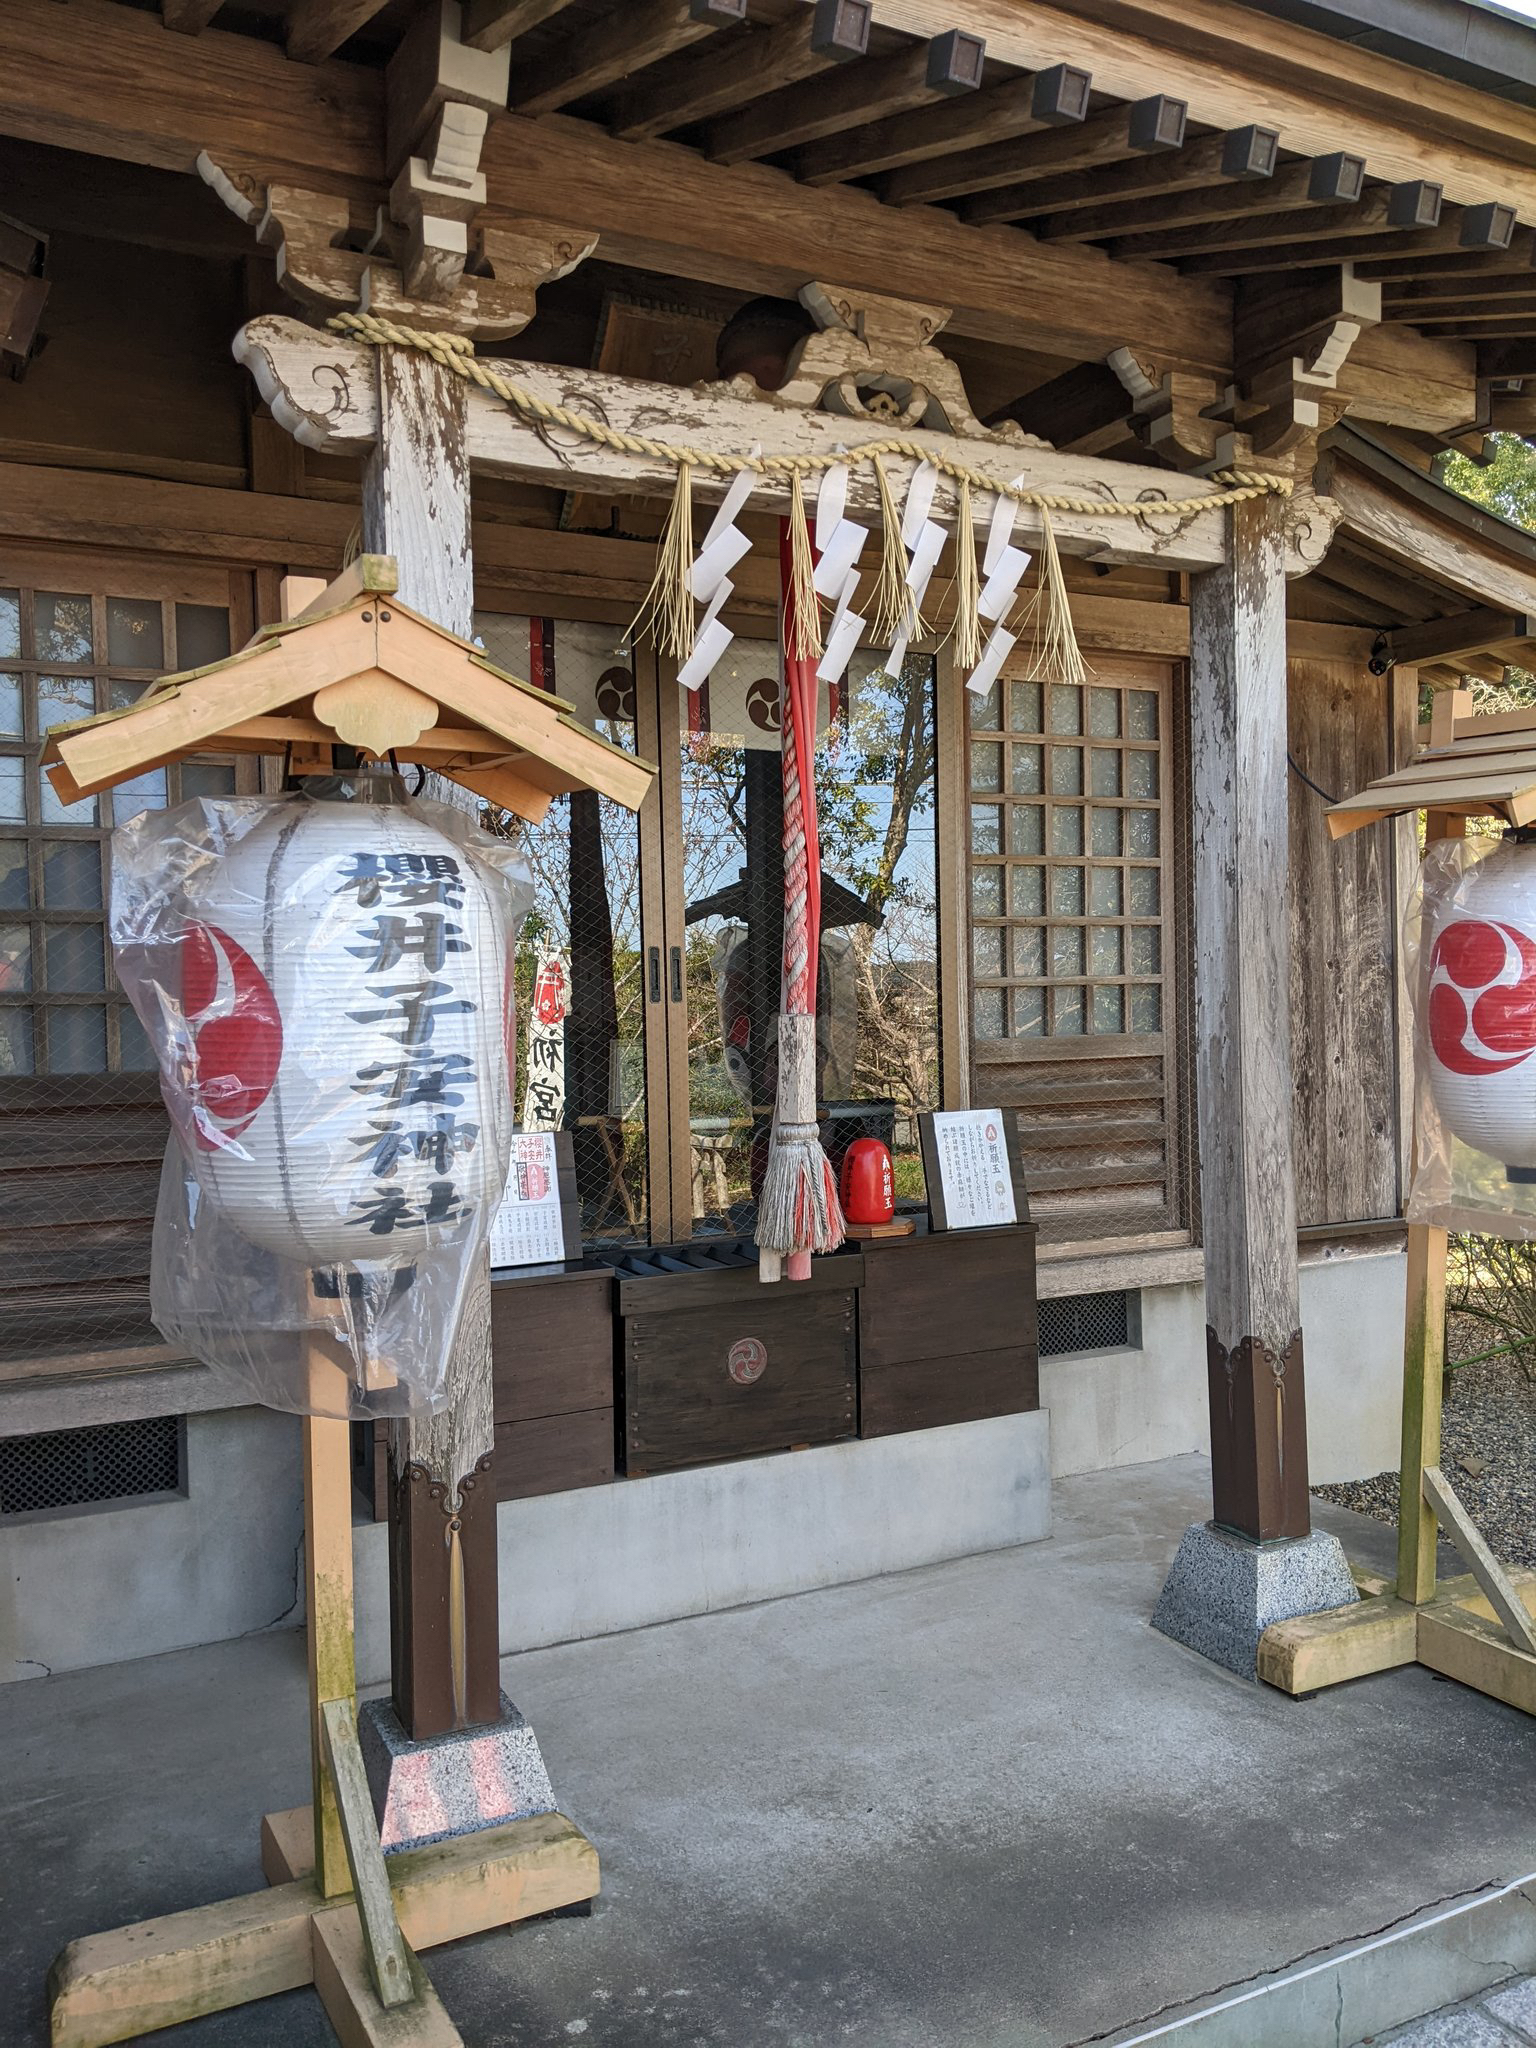 櫻井子安神社